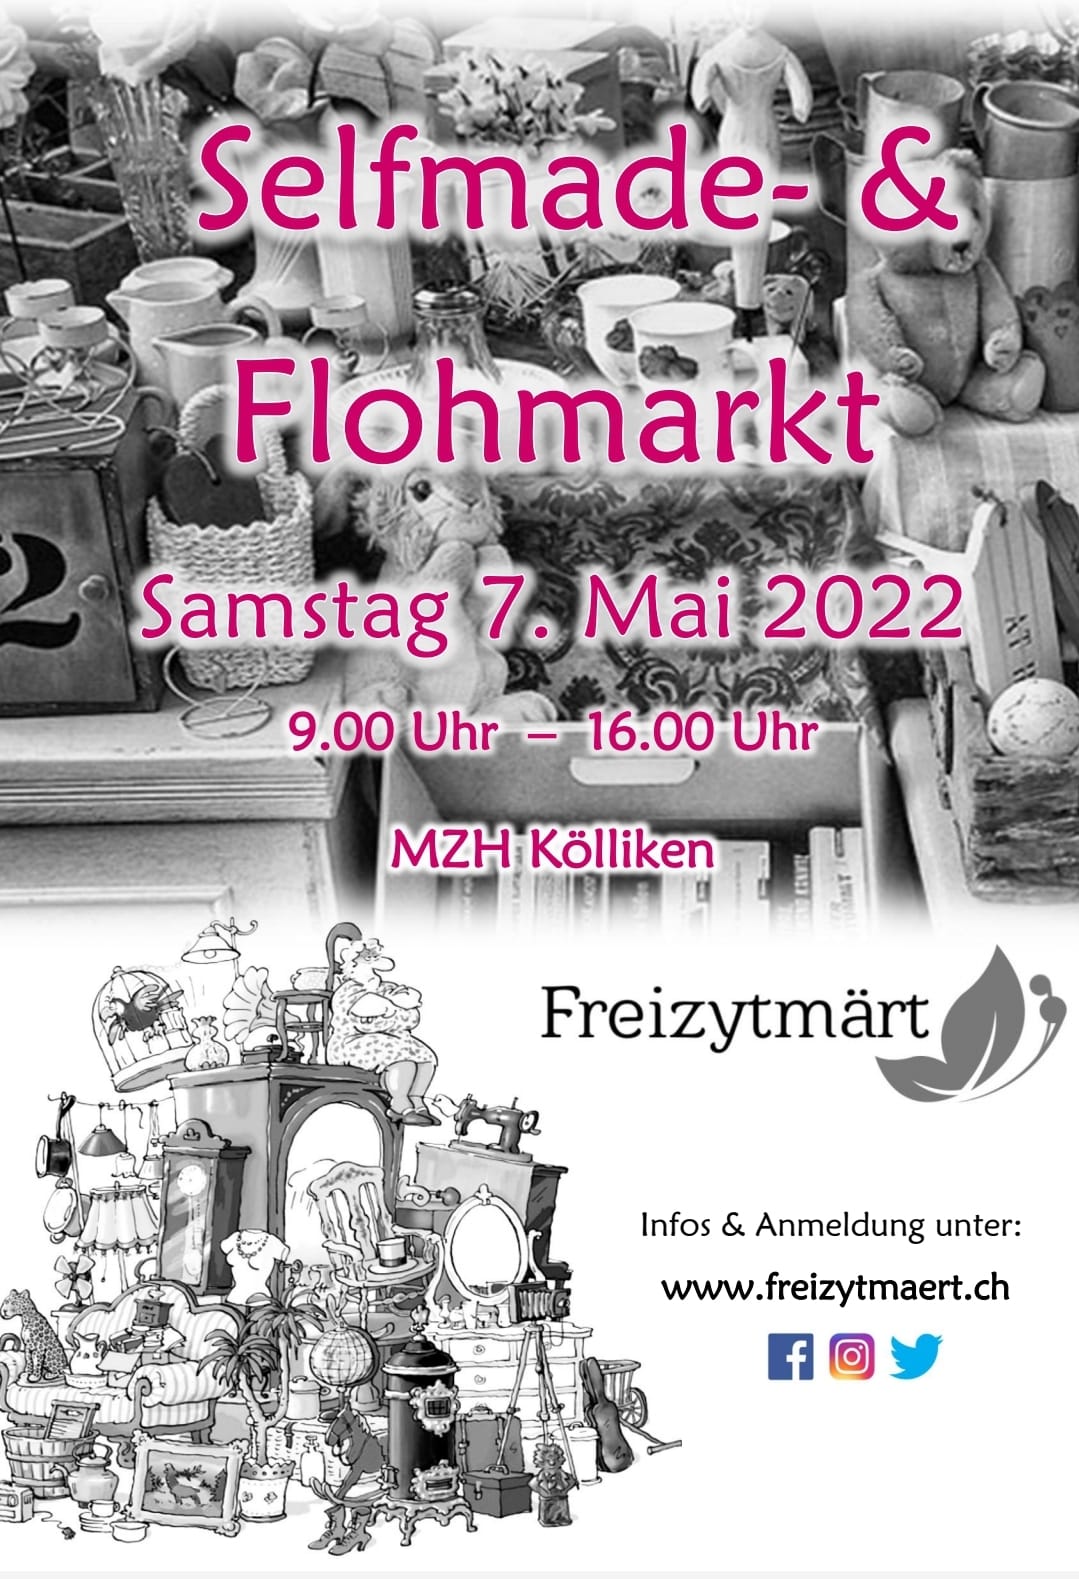 Selfmade- und Flohmarkt in Kölliken / Mai 2022